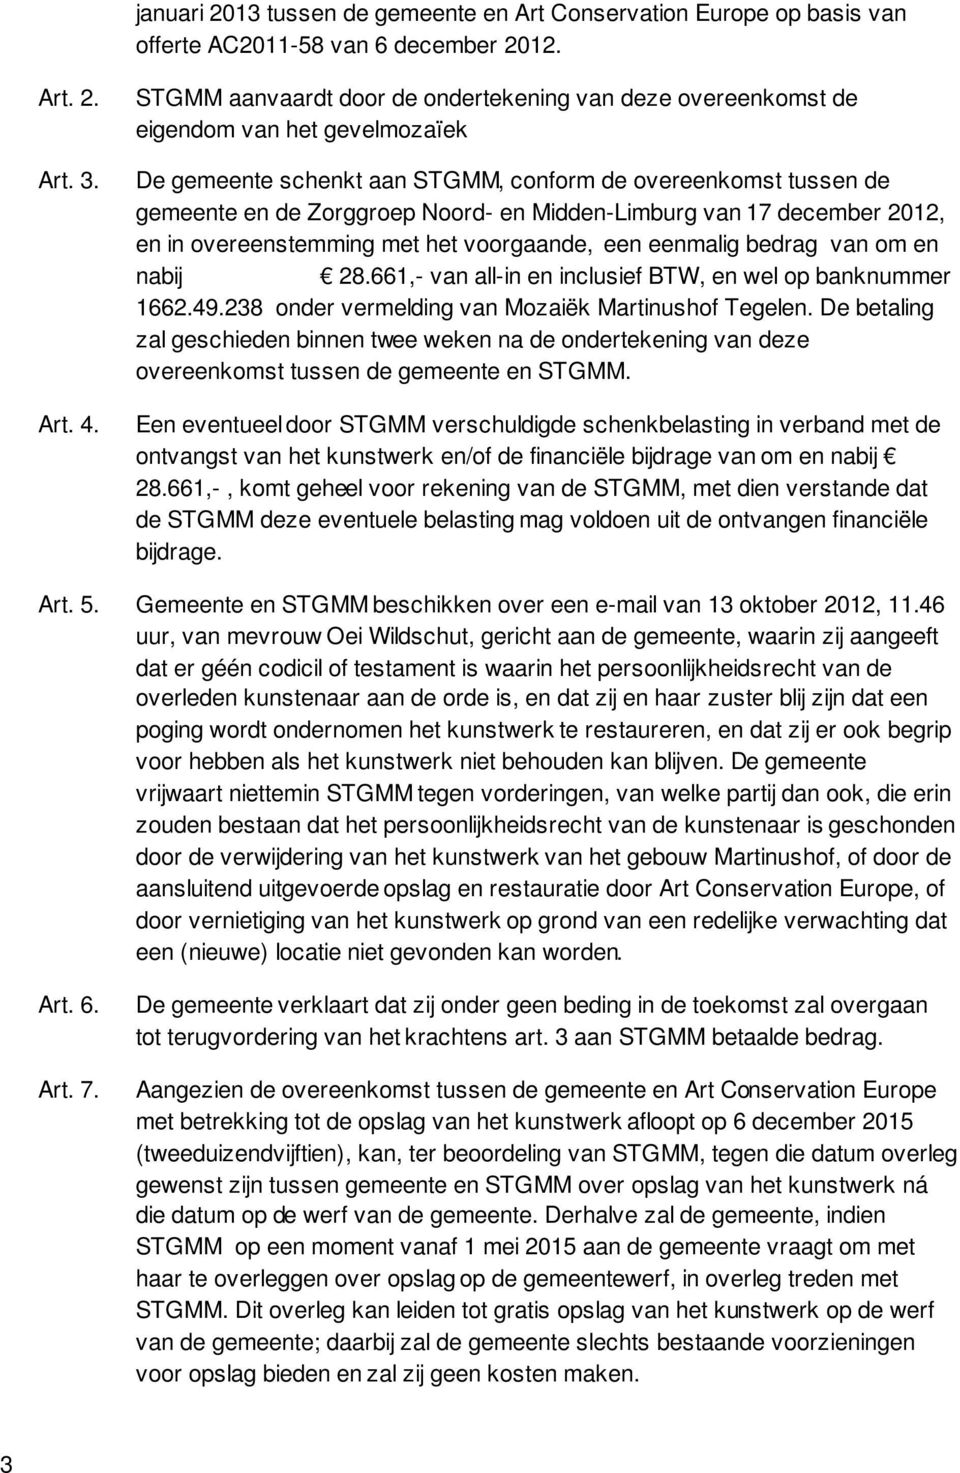 Midden-Limburg van 17 december 2012, en in overeenstemming met het voorgaande, een eenmalig bedrag van om en nabij 28.661,- van all-in en inclusief BTW, en wel op banknummer 1662.49.